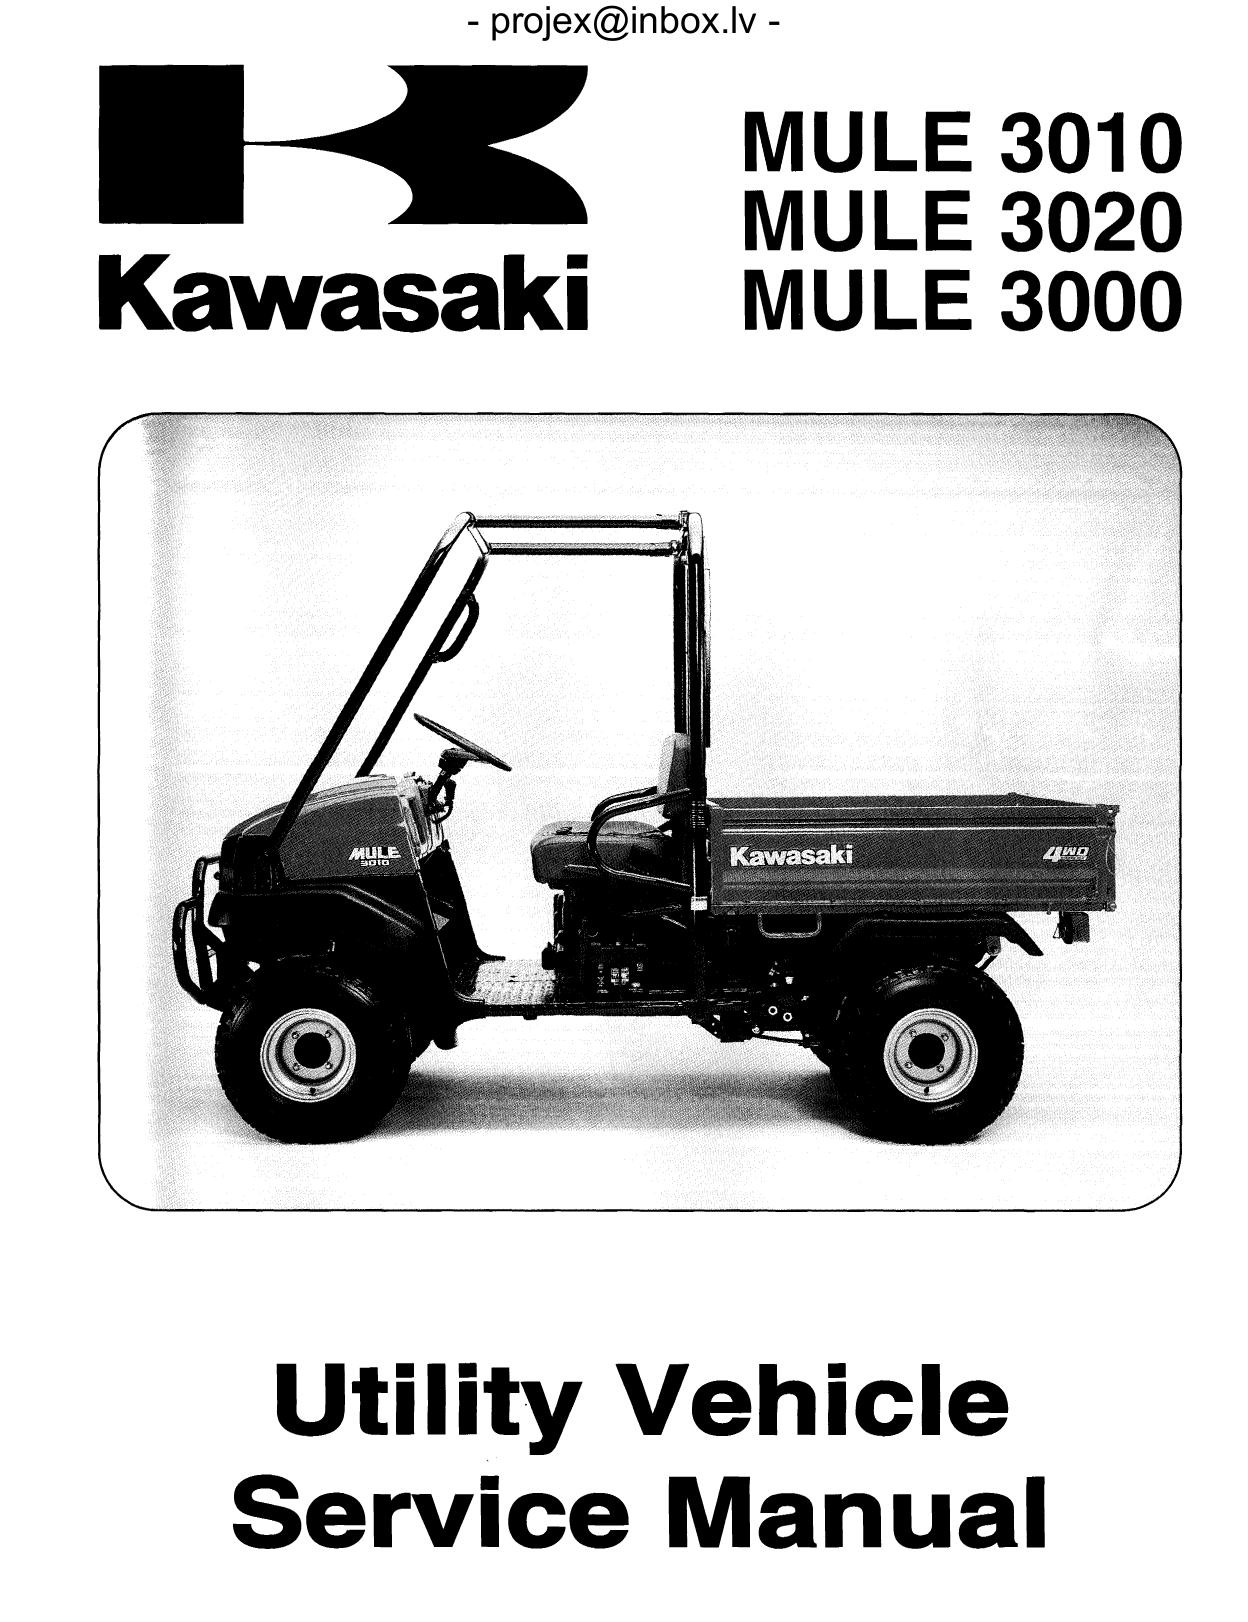 2001-2008 Kawasaki KAF620, Mule 3000, Mule 3010, Mule 3020 service manual Preview image 1